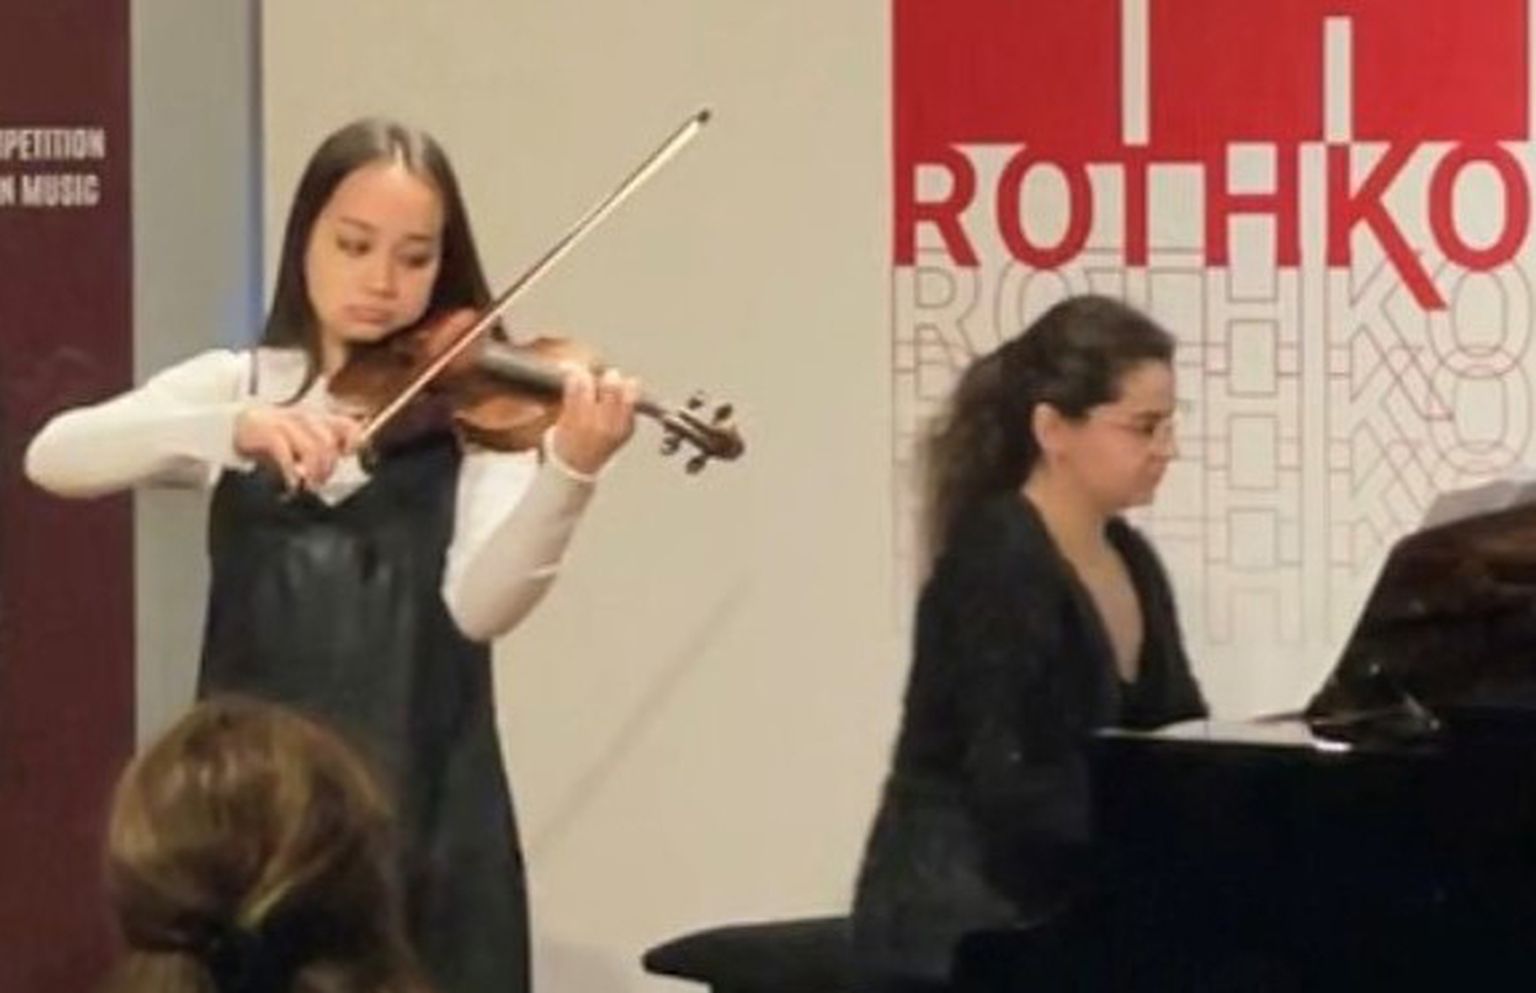 Sofia Kulikova õpib Ahtme kunstide koolis viiulit ja orelit ning valis konkursil osalemiseks viiuli. Klaveri taga on tema õpetaja Aleksandra Serebrjakova.